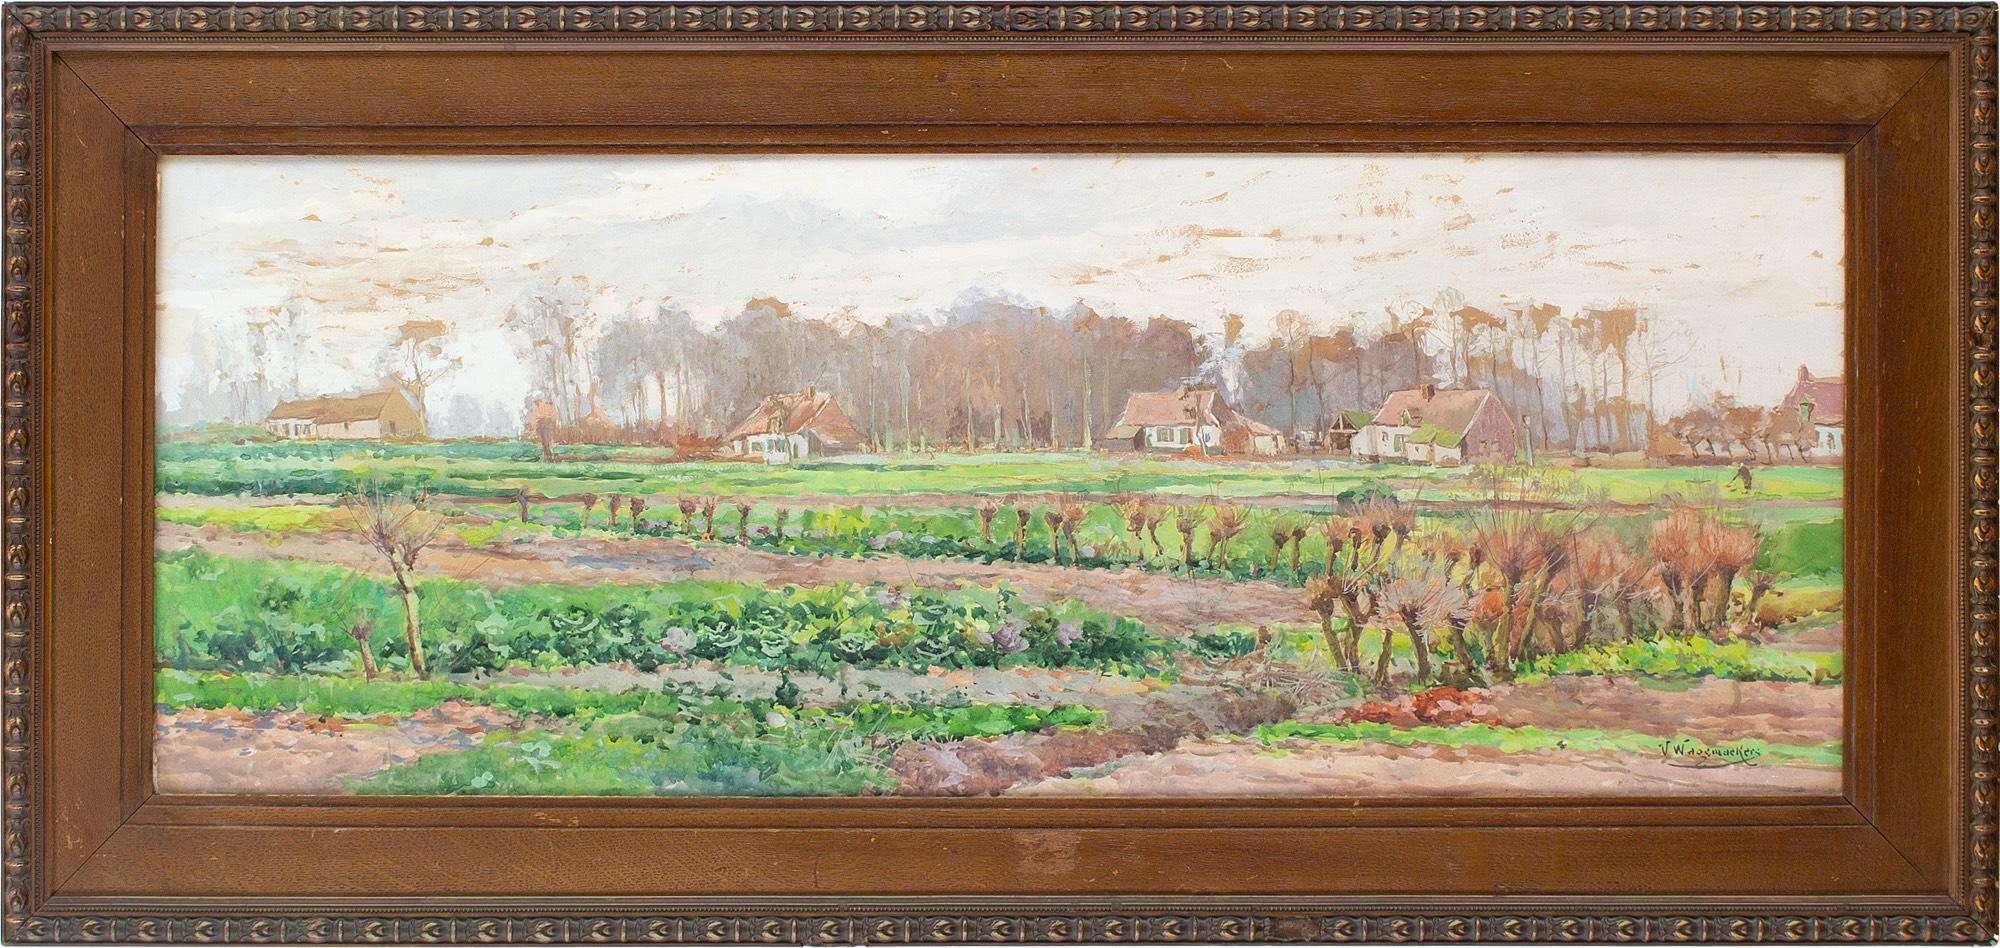 Dieses Aquarell des belgischen Künstlers Victor Wagemaekers (1876-1953) aus dem frühen 20. Jahrhundert zeigt einen Blick über ein offenes Feld auf mehrere Bauernhäuser. Es ist ein vollendetes naturalistisches Werk.

Hier sehen wir das